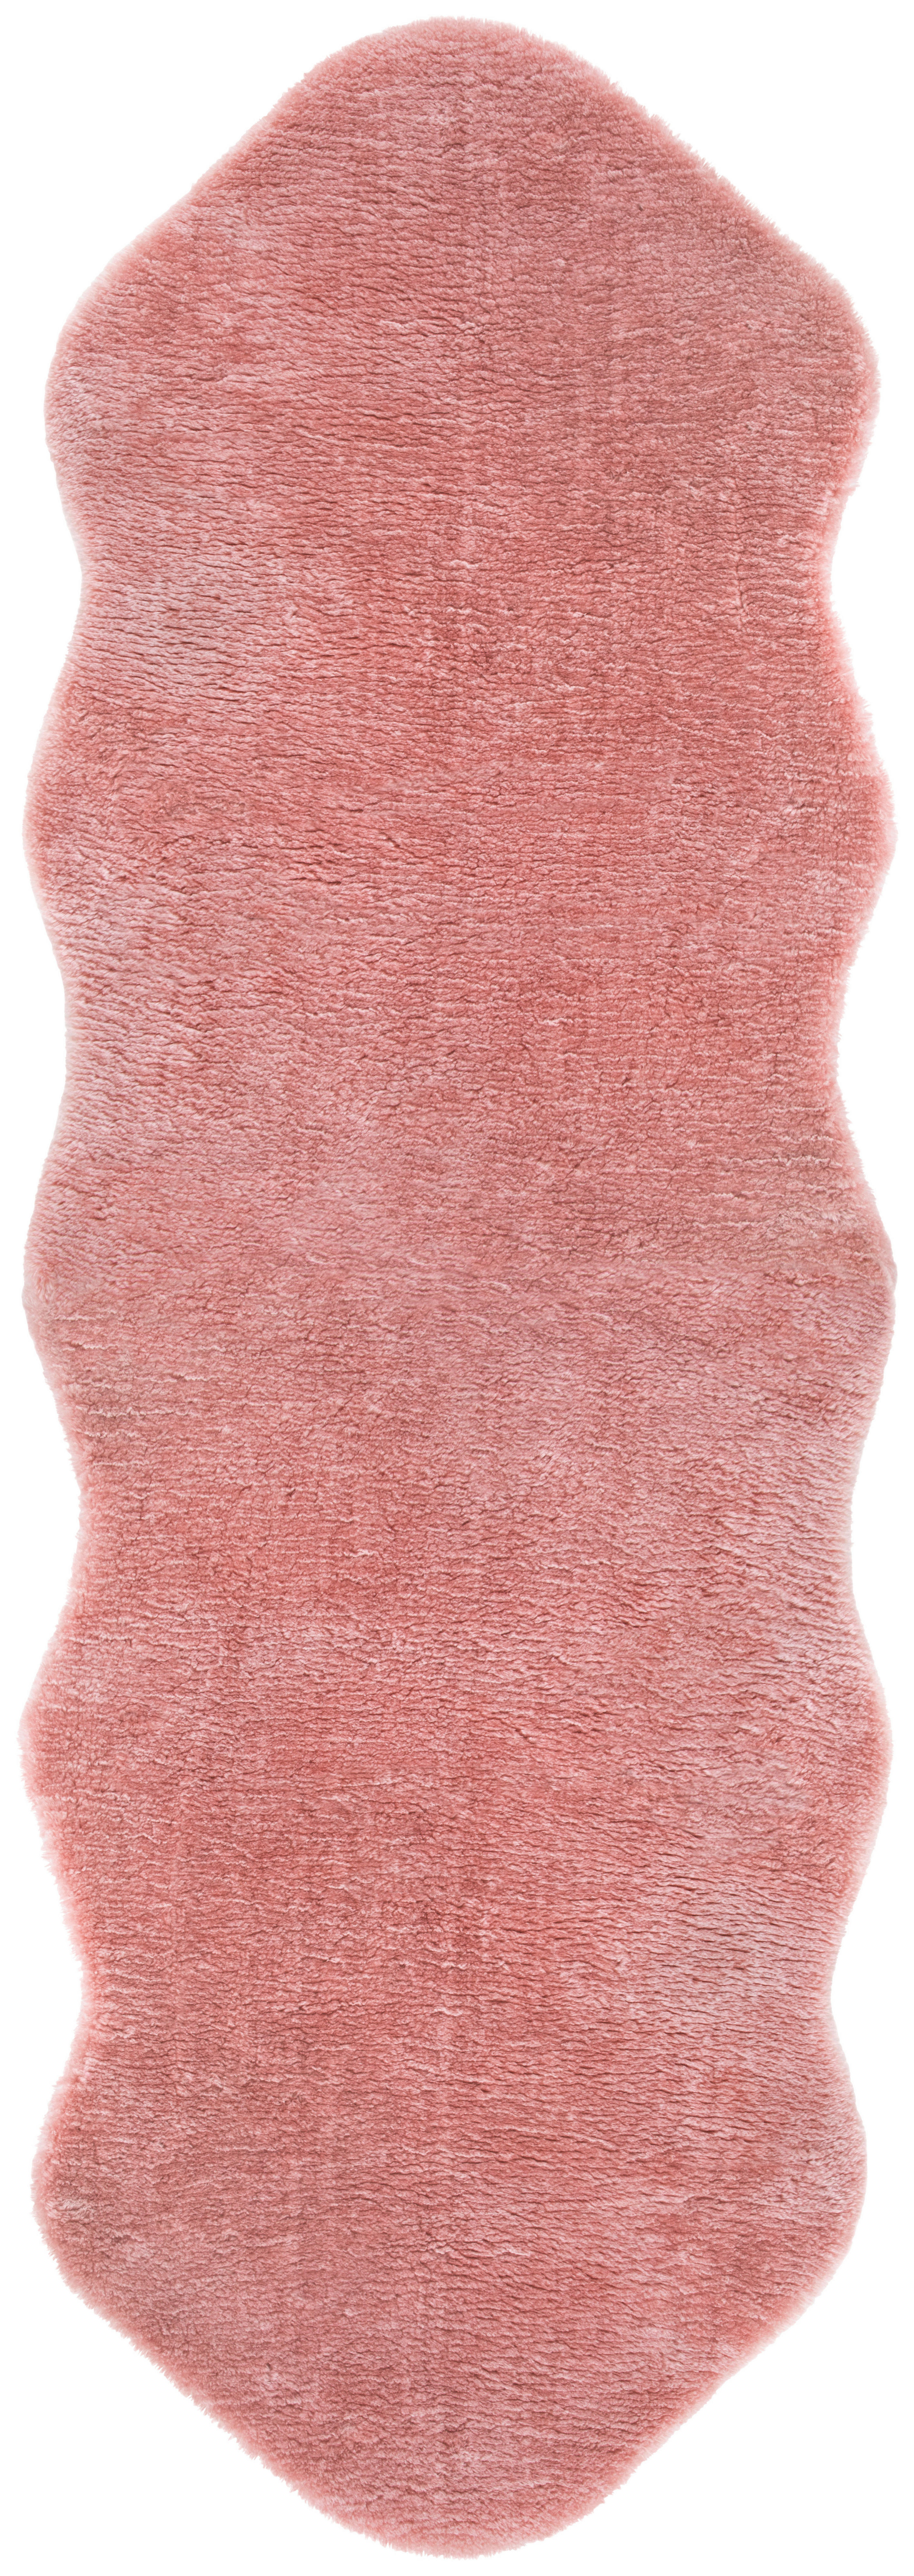 Fellimitat Fellimitat rosa B/L: ca. 55x160 cm Fellimitat - rosa (55,00/160,00cm)